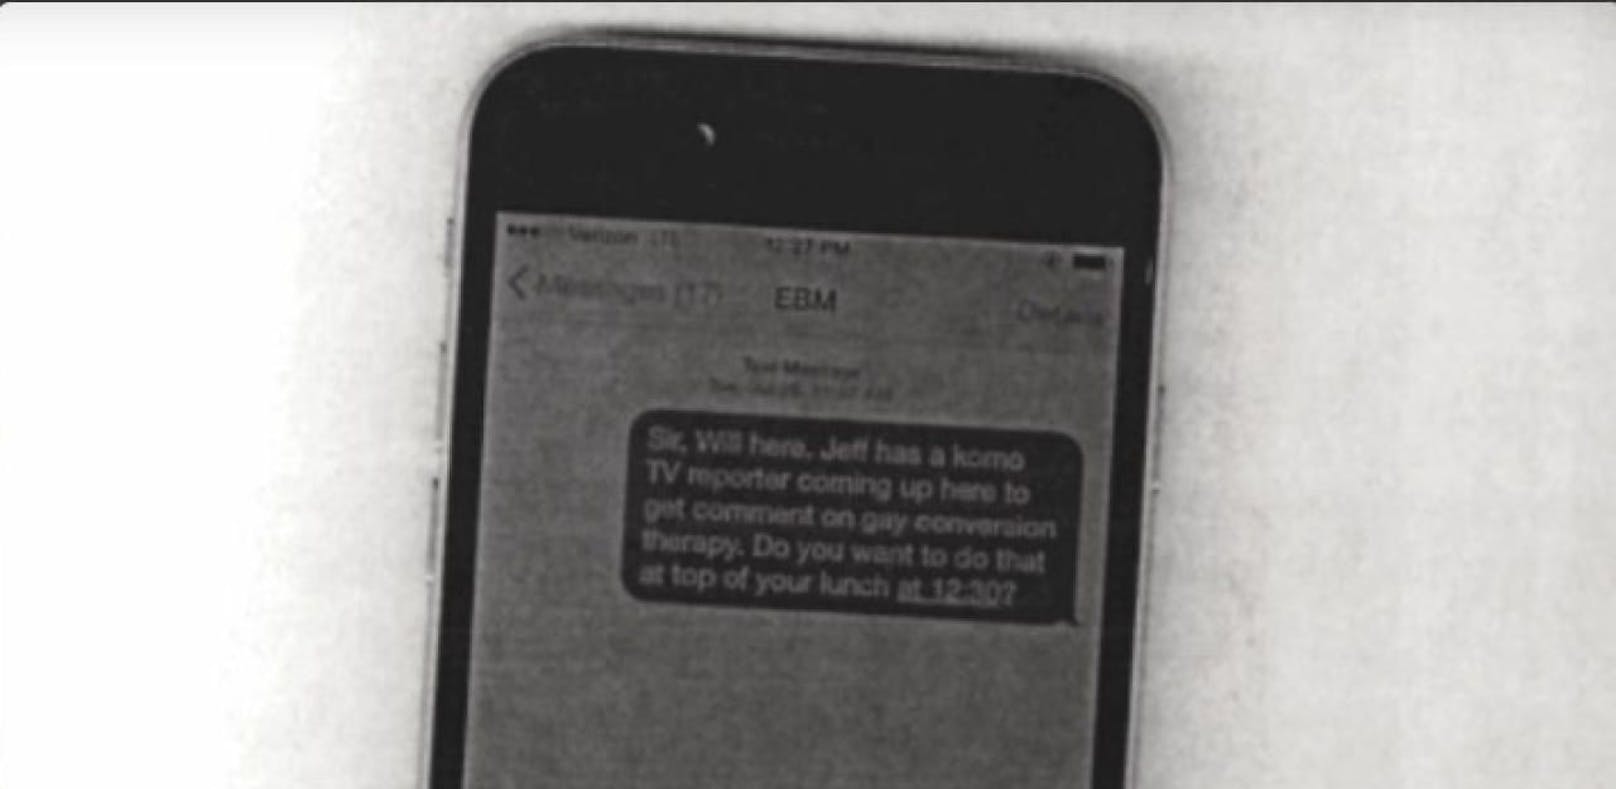 Bürgermeister will SMS schicken: Er kopiert Handy